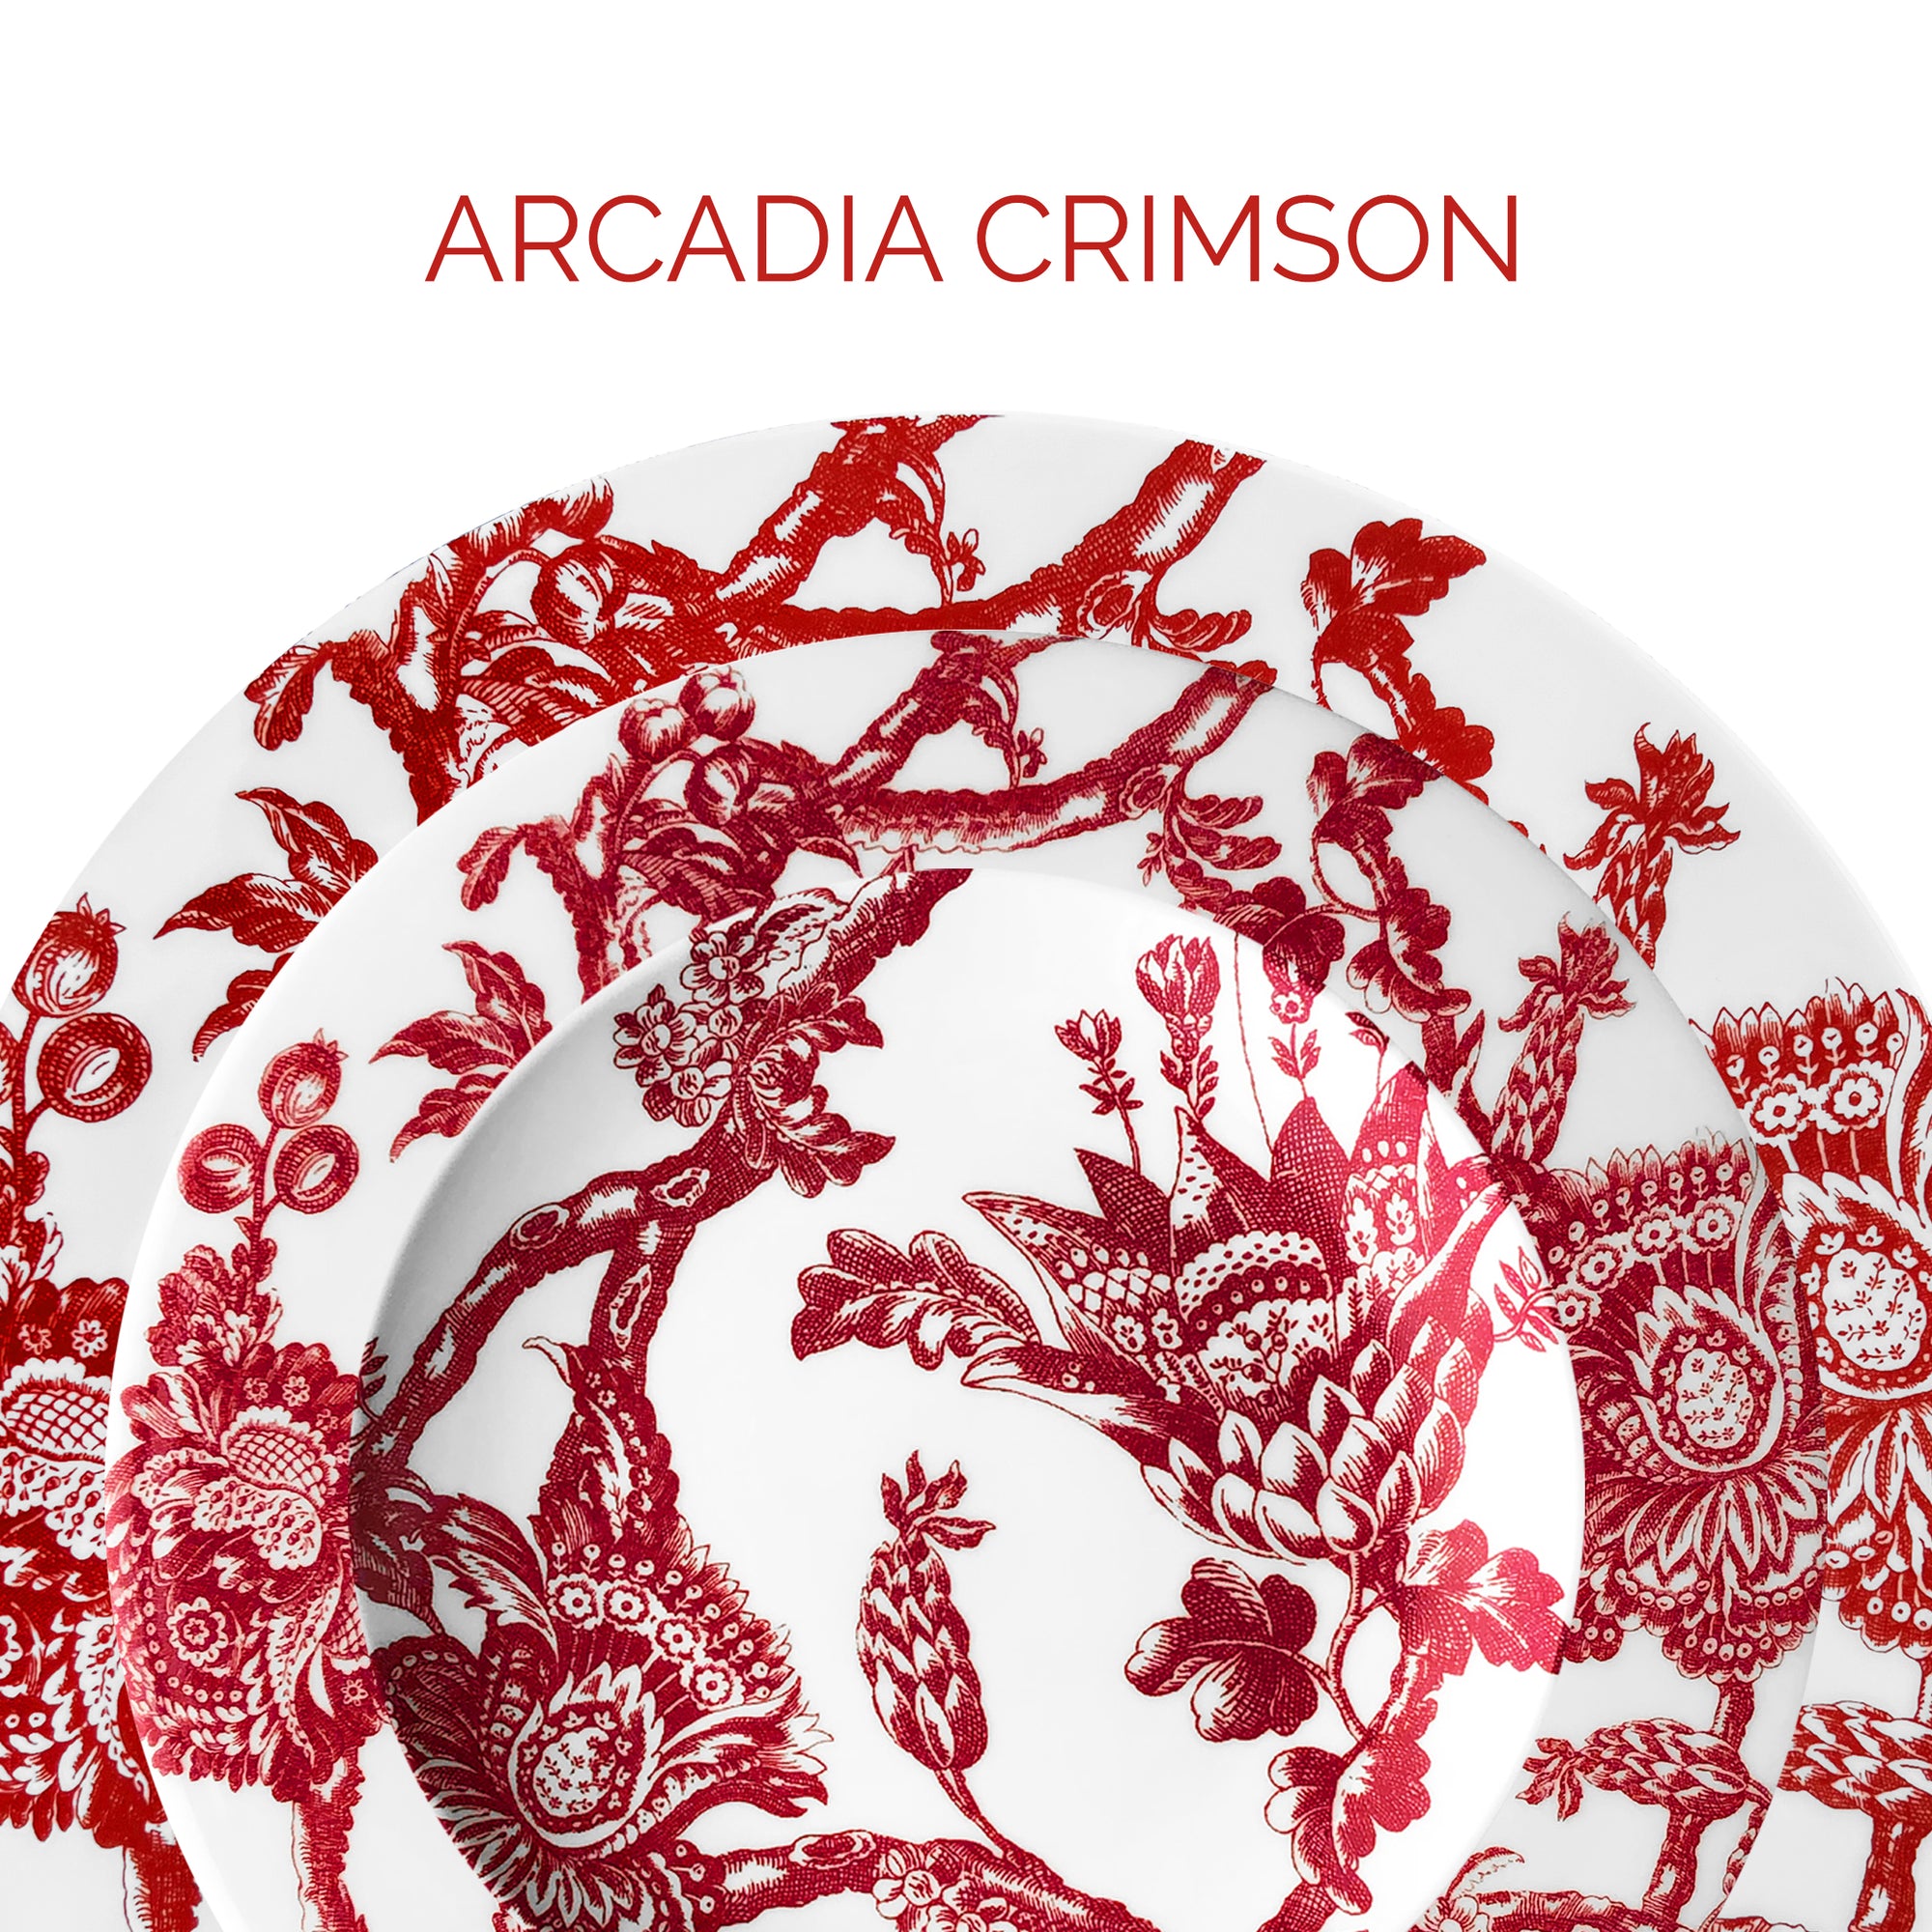 Arcadia Crimson